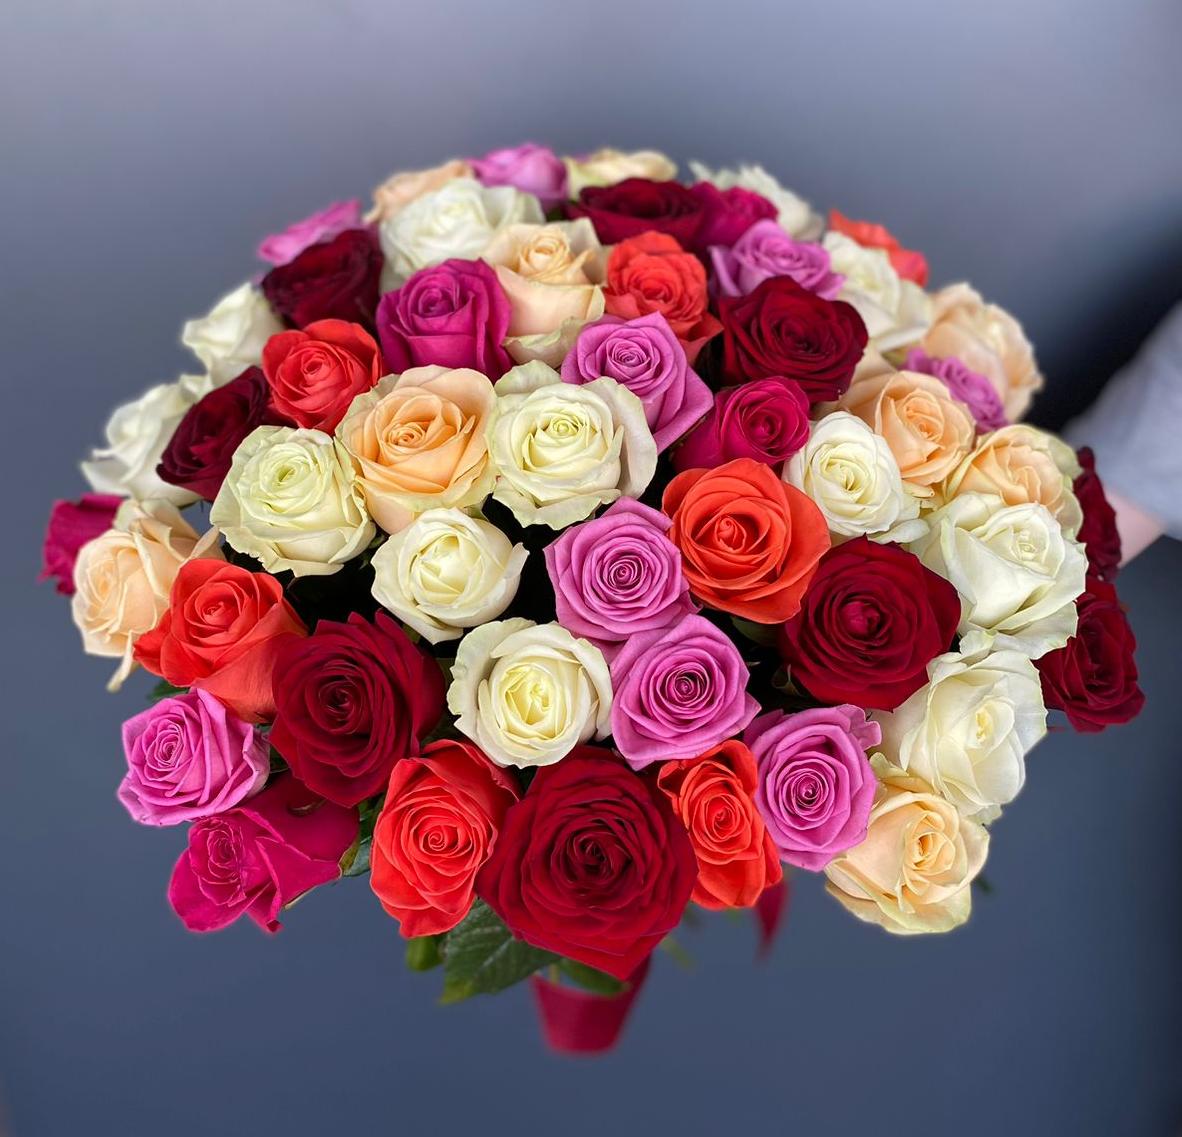 Роза Россия Микс 51 - Цветочный салон ЦветкоFF Тюмень